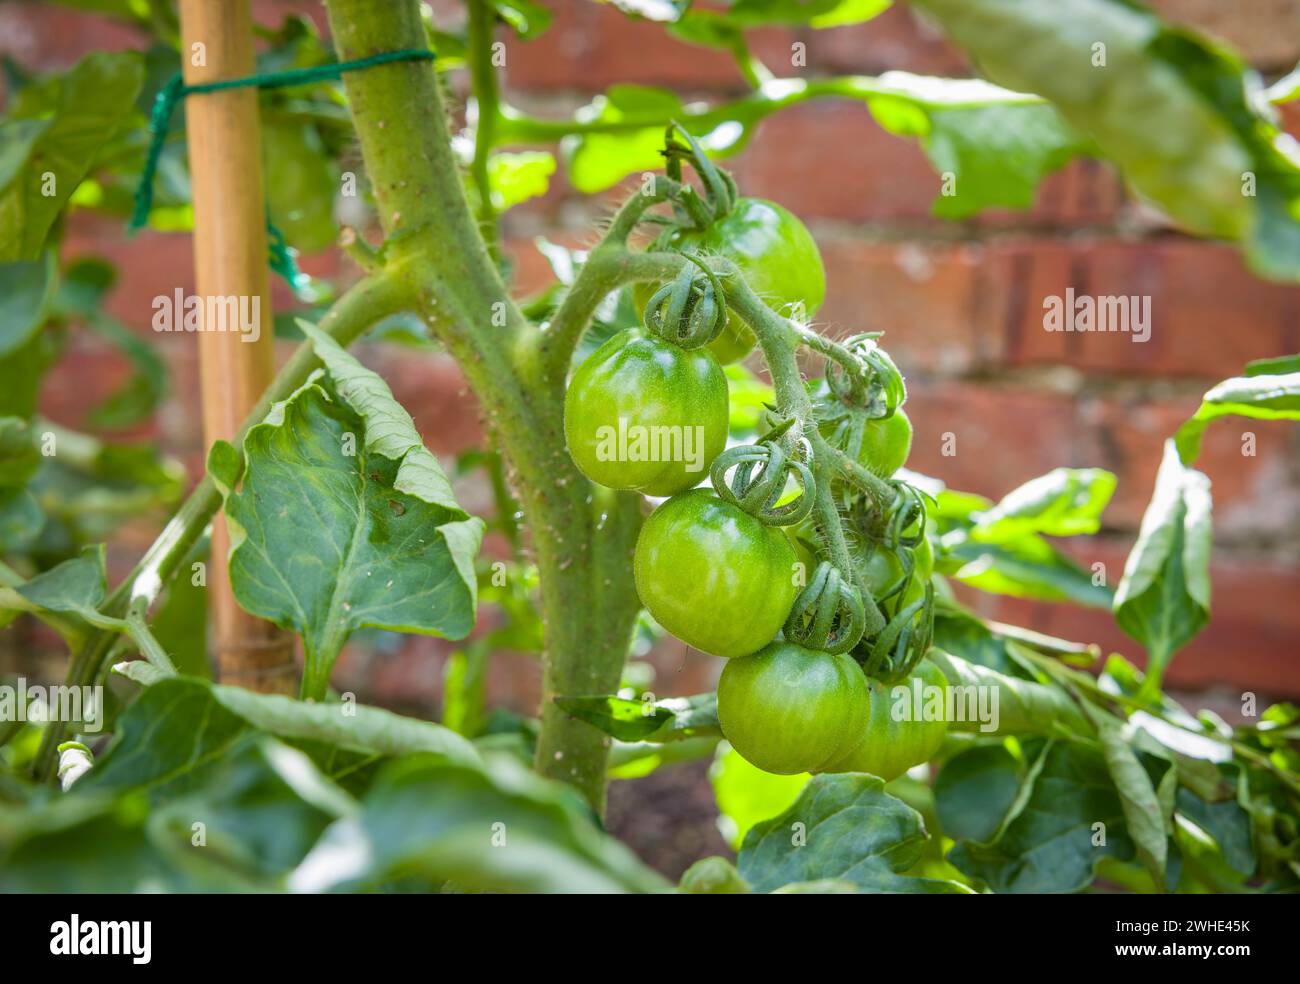 Tomates vertes poussant en extérieur sur une variété ailsa craig, plante de tomate de vigne indéterminée (cordon) dans un jardin britannique. Les tomates non mûres mûrissent. Banque D'Images